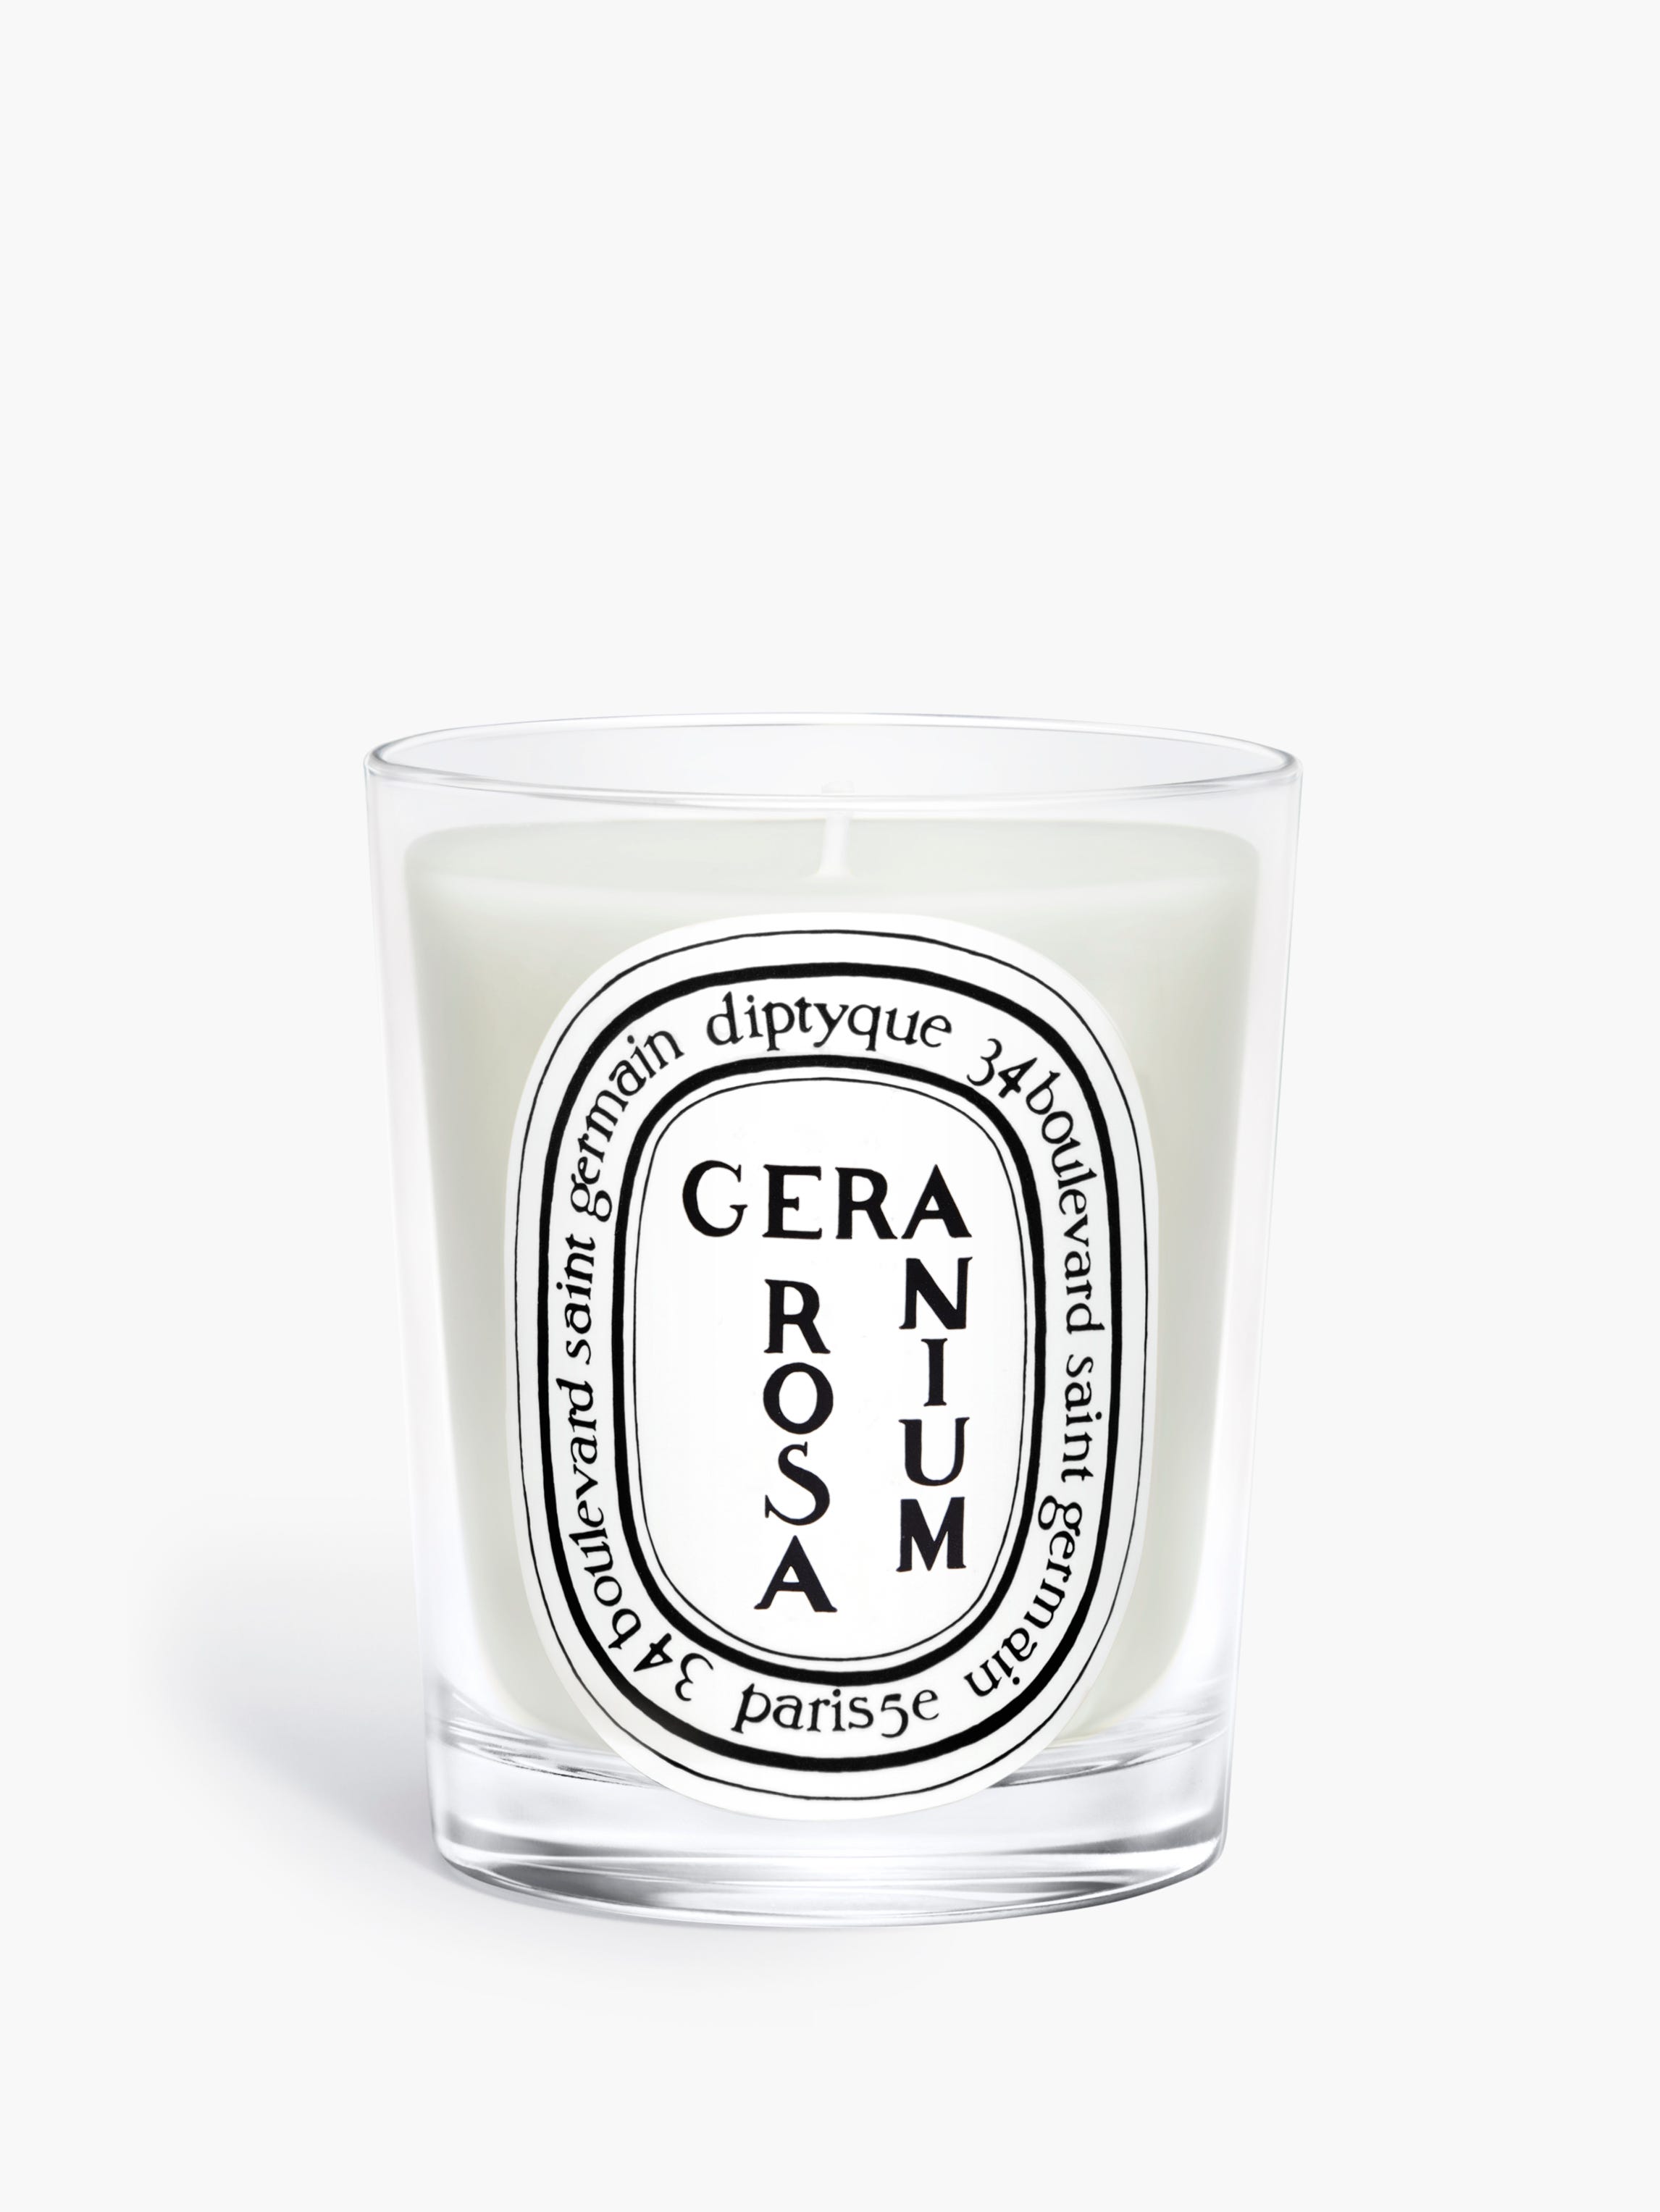 Geranium Rosa - Classic Candle Classic | Diptyque Paris